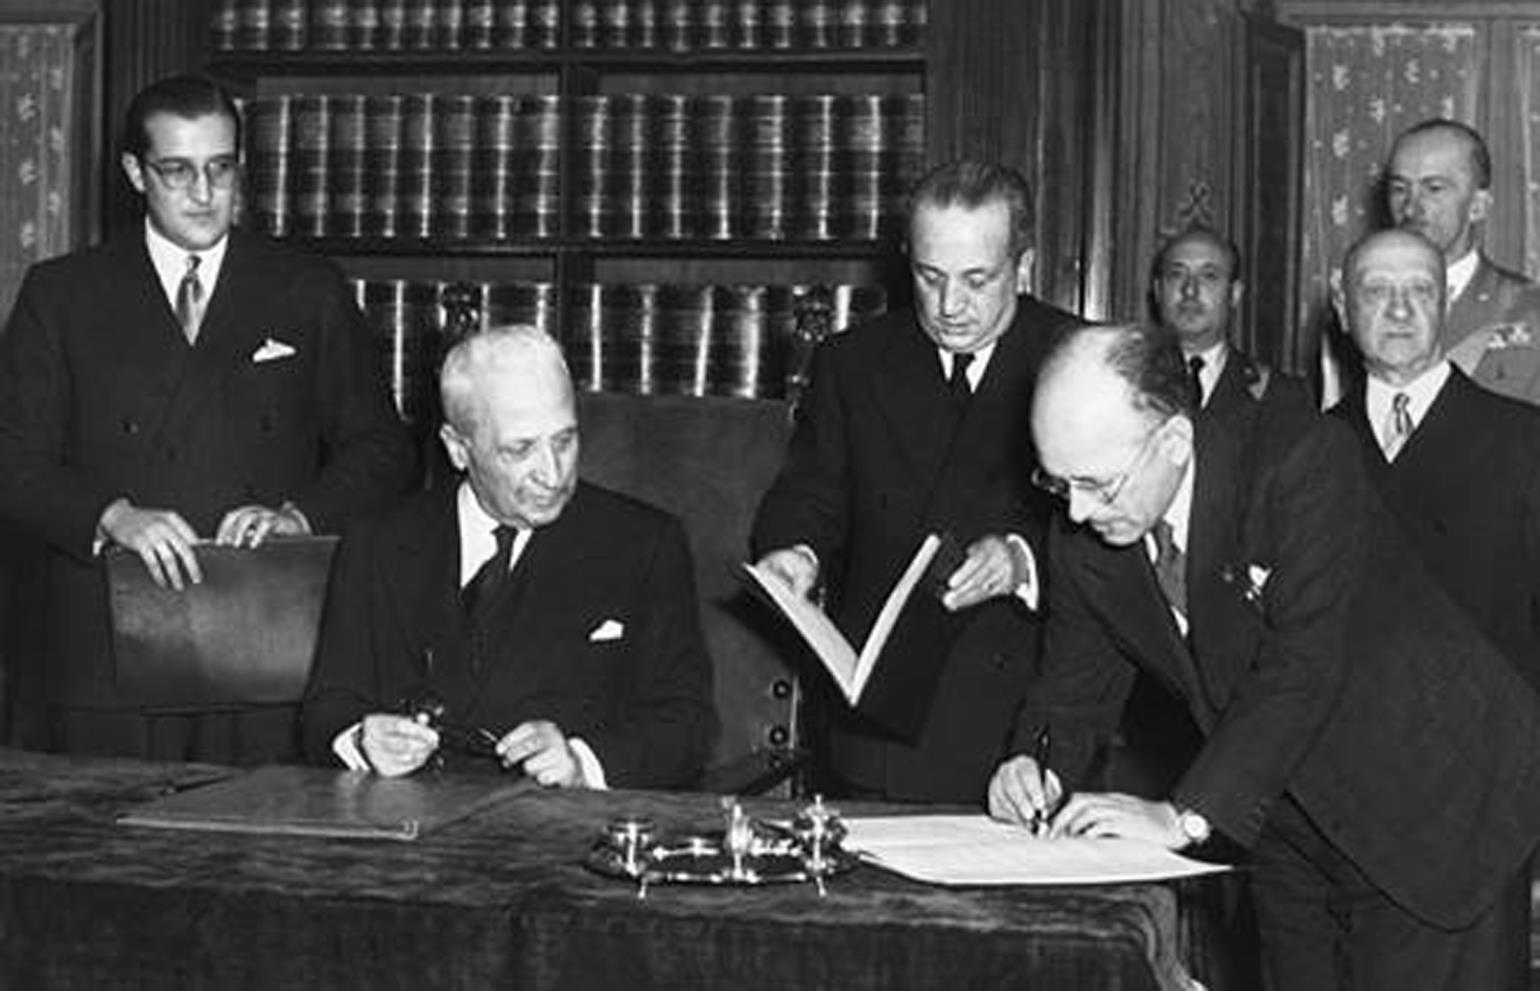 Storia della Costituzione. Umberto Terracini, presidente dell'Assemblea costituente dall'8 febbraio 1947 allo scioglimento, firma la Costituzione italiana